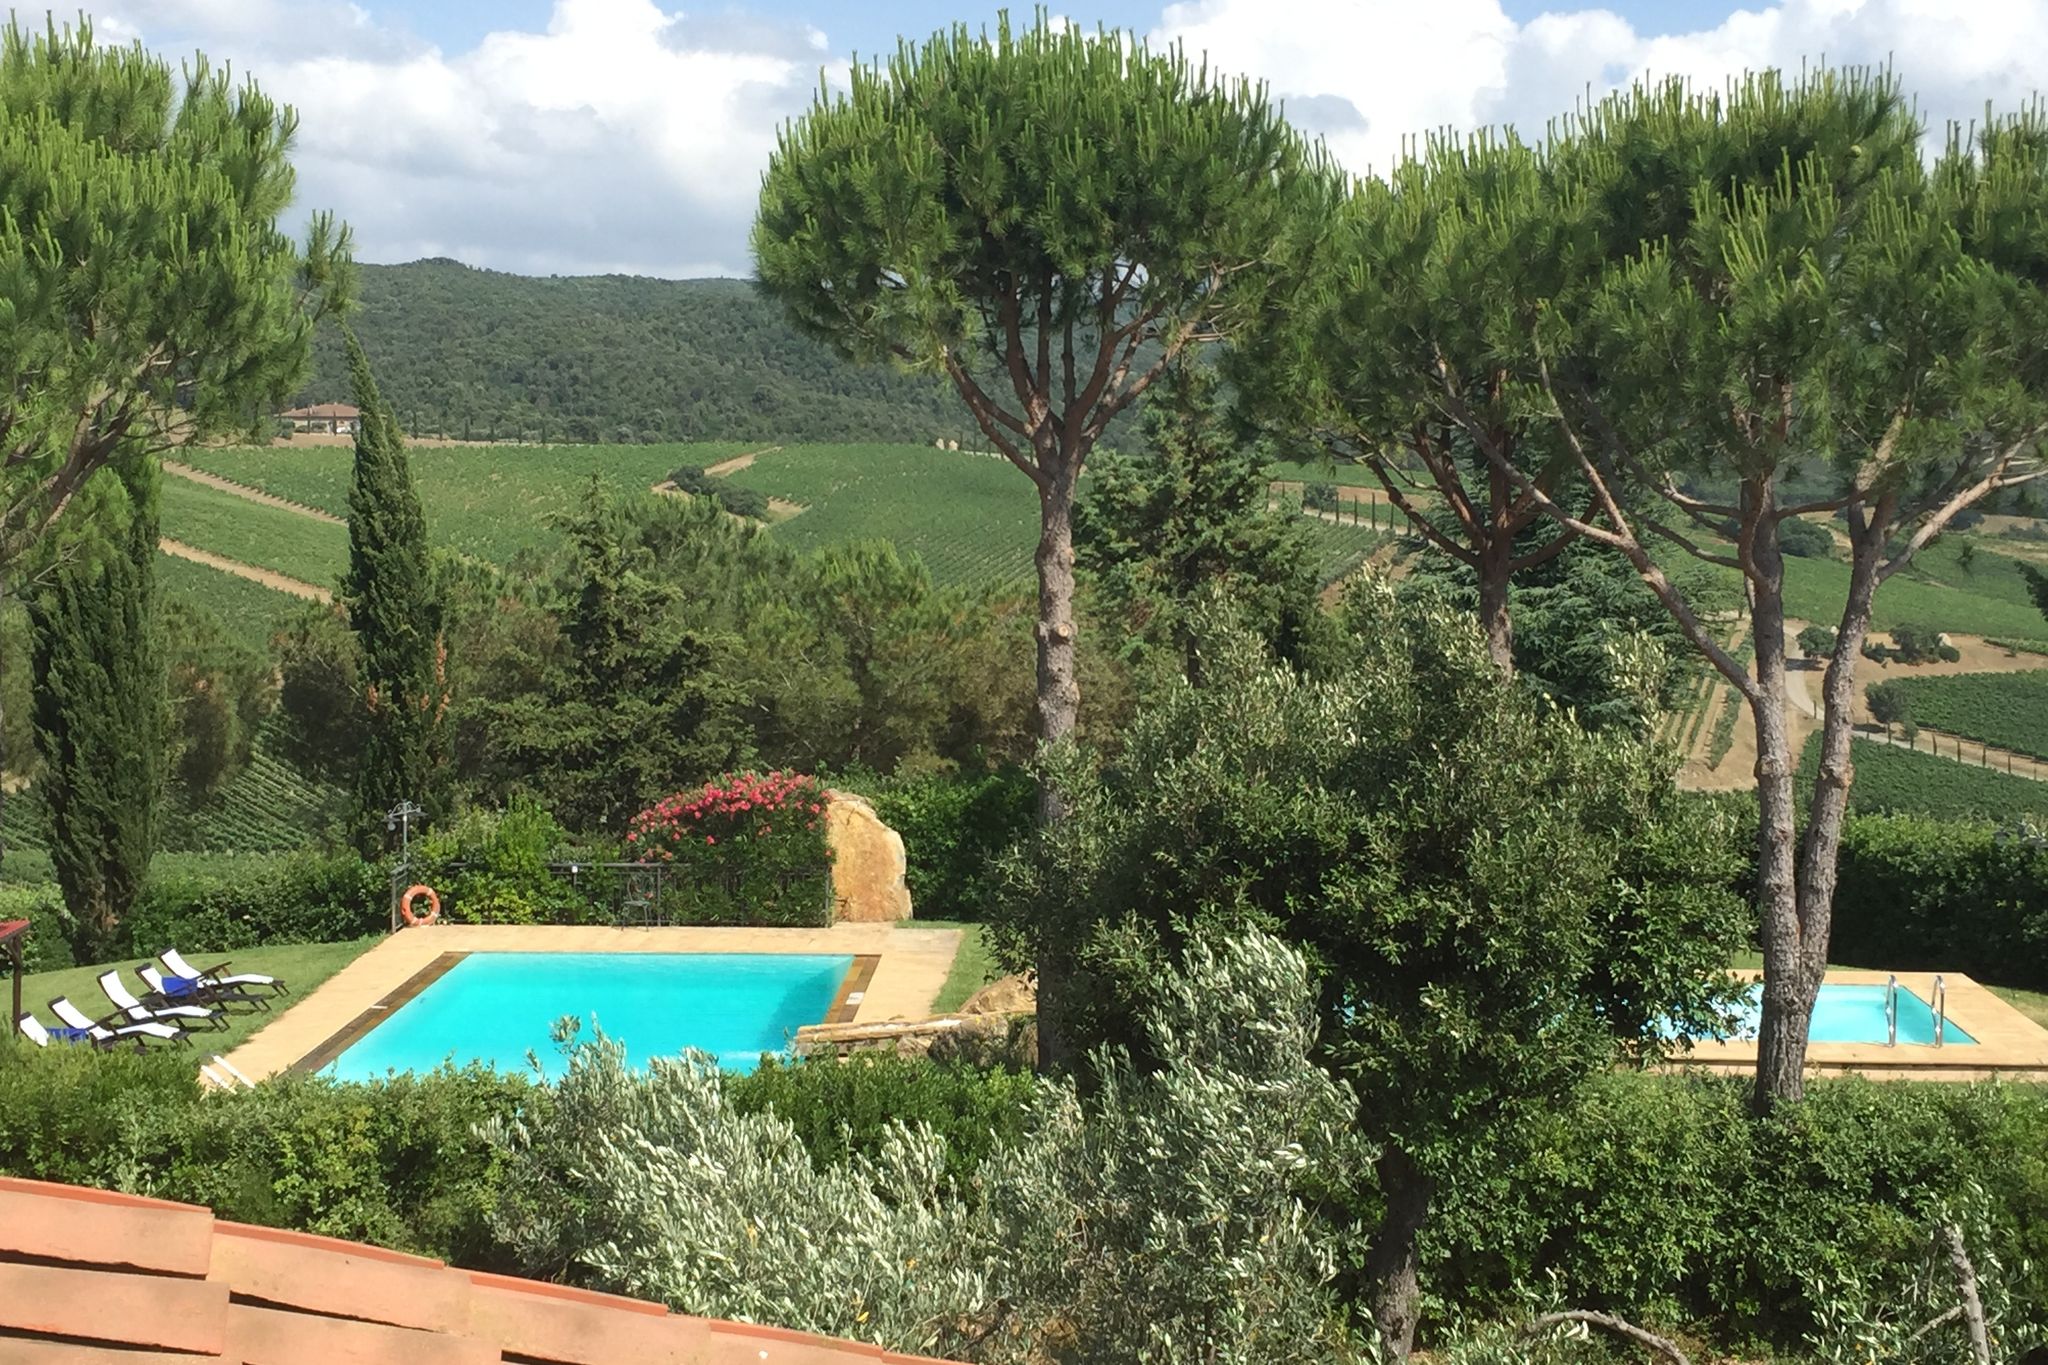 Elegante villa in Grosseto met privézwembad en jacuzzi